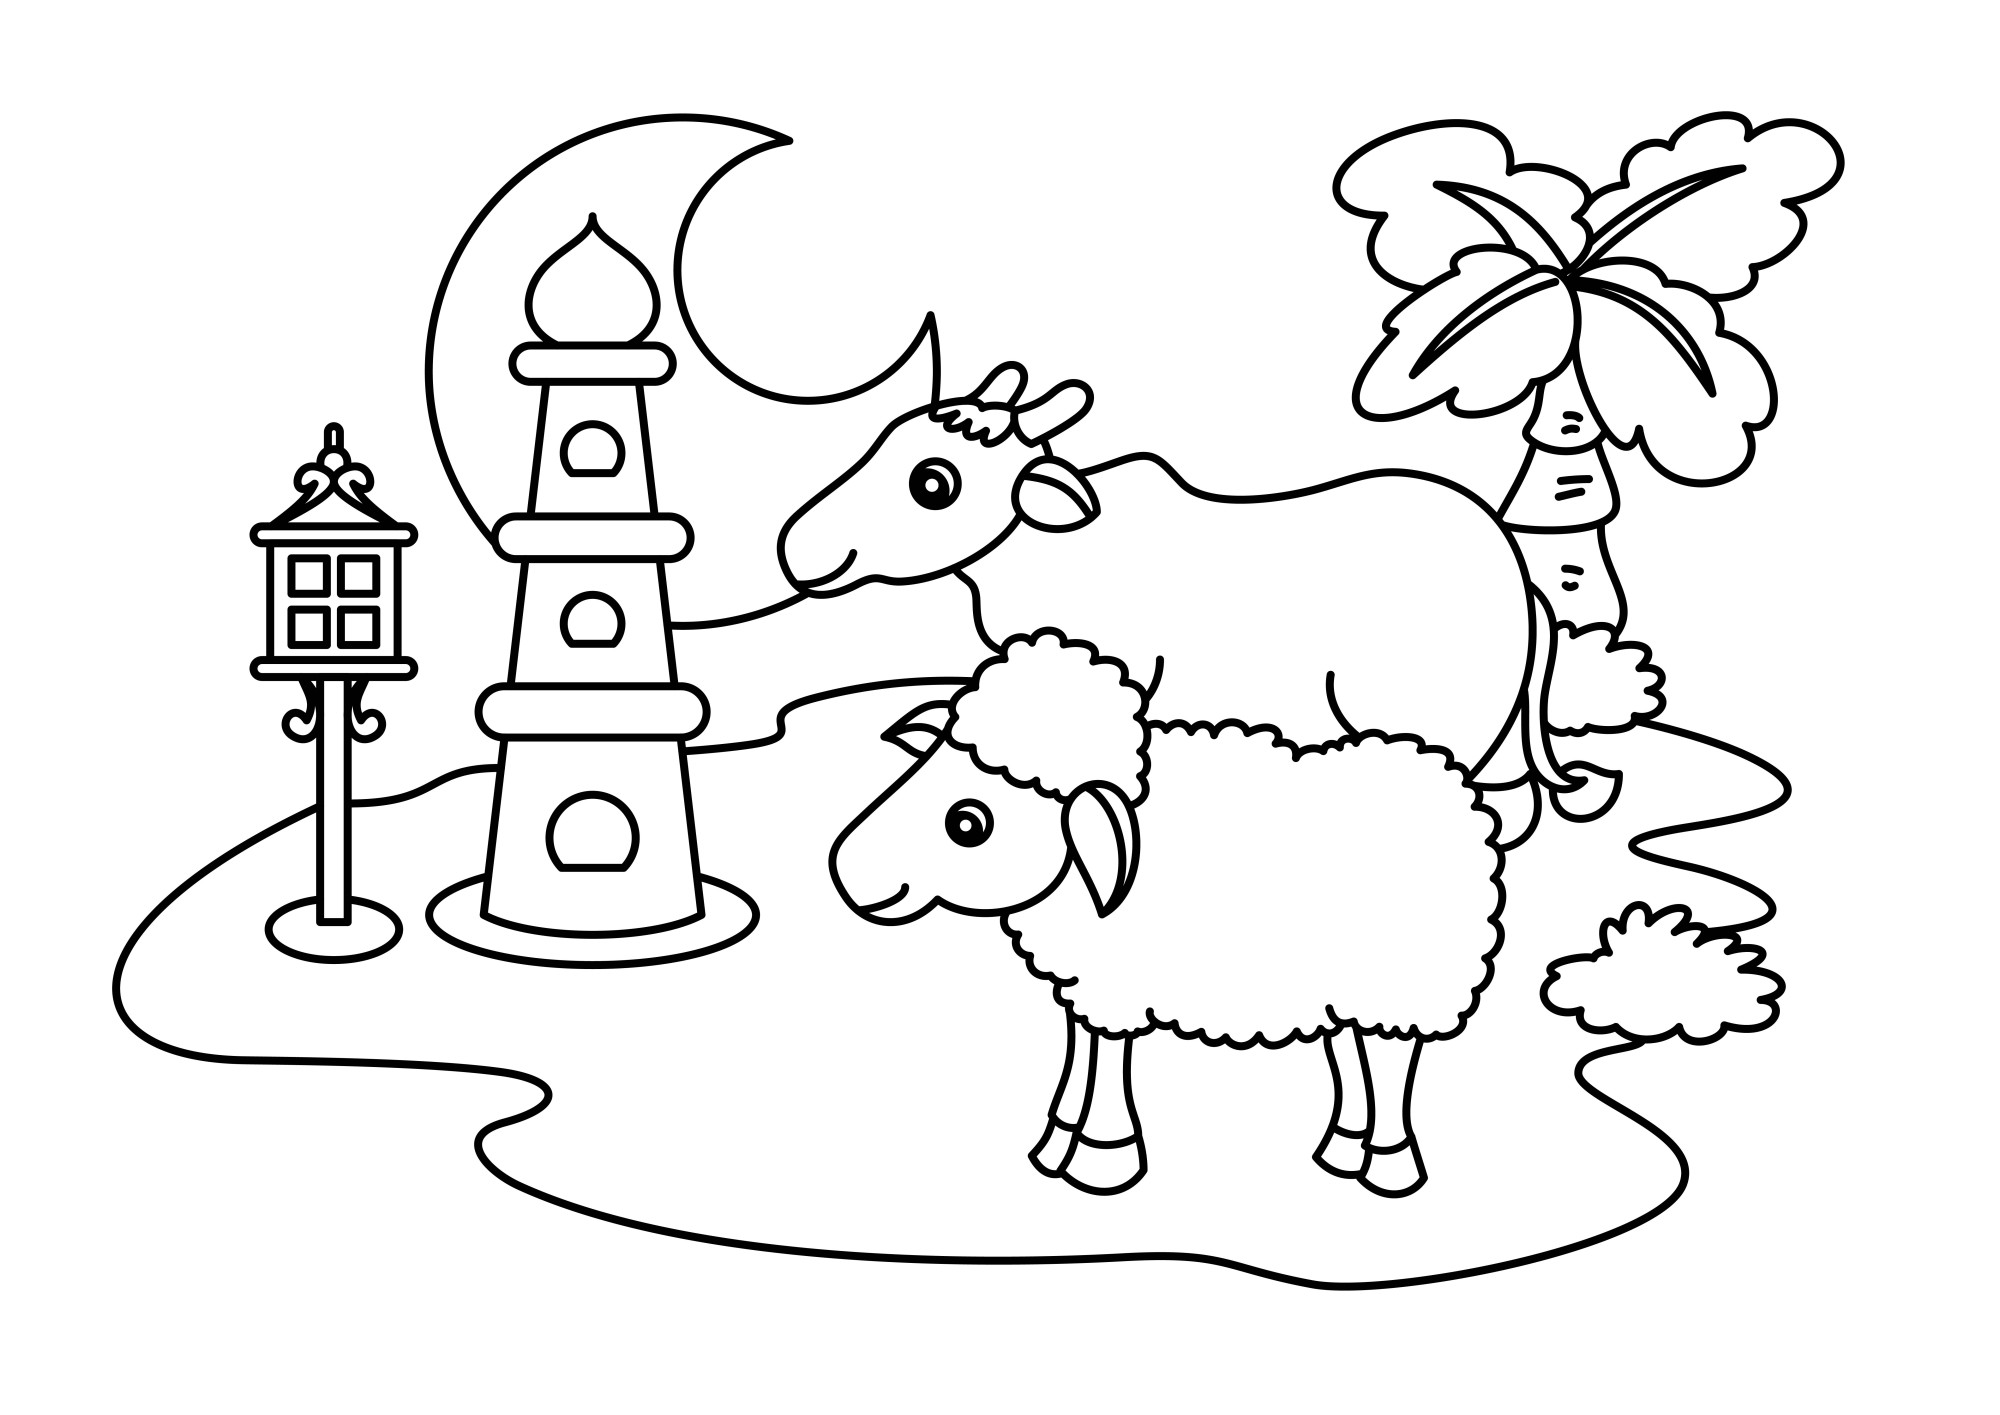 Раскраска для детей: овца с коровой на поле